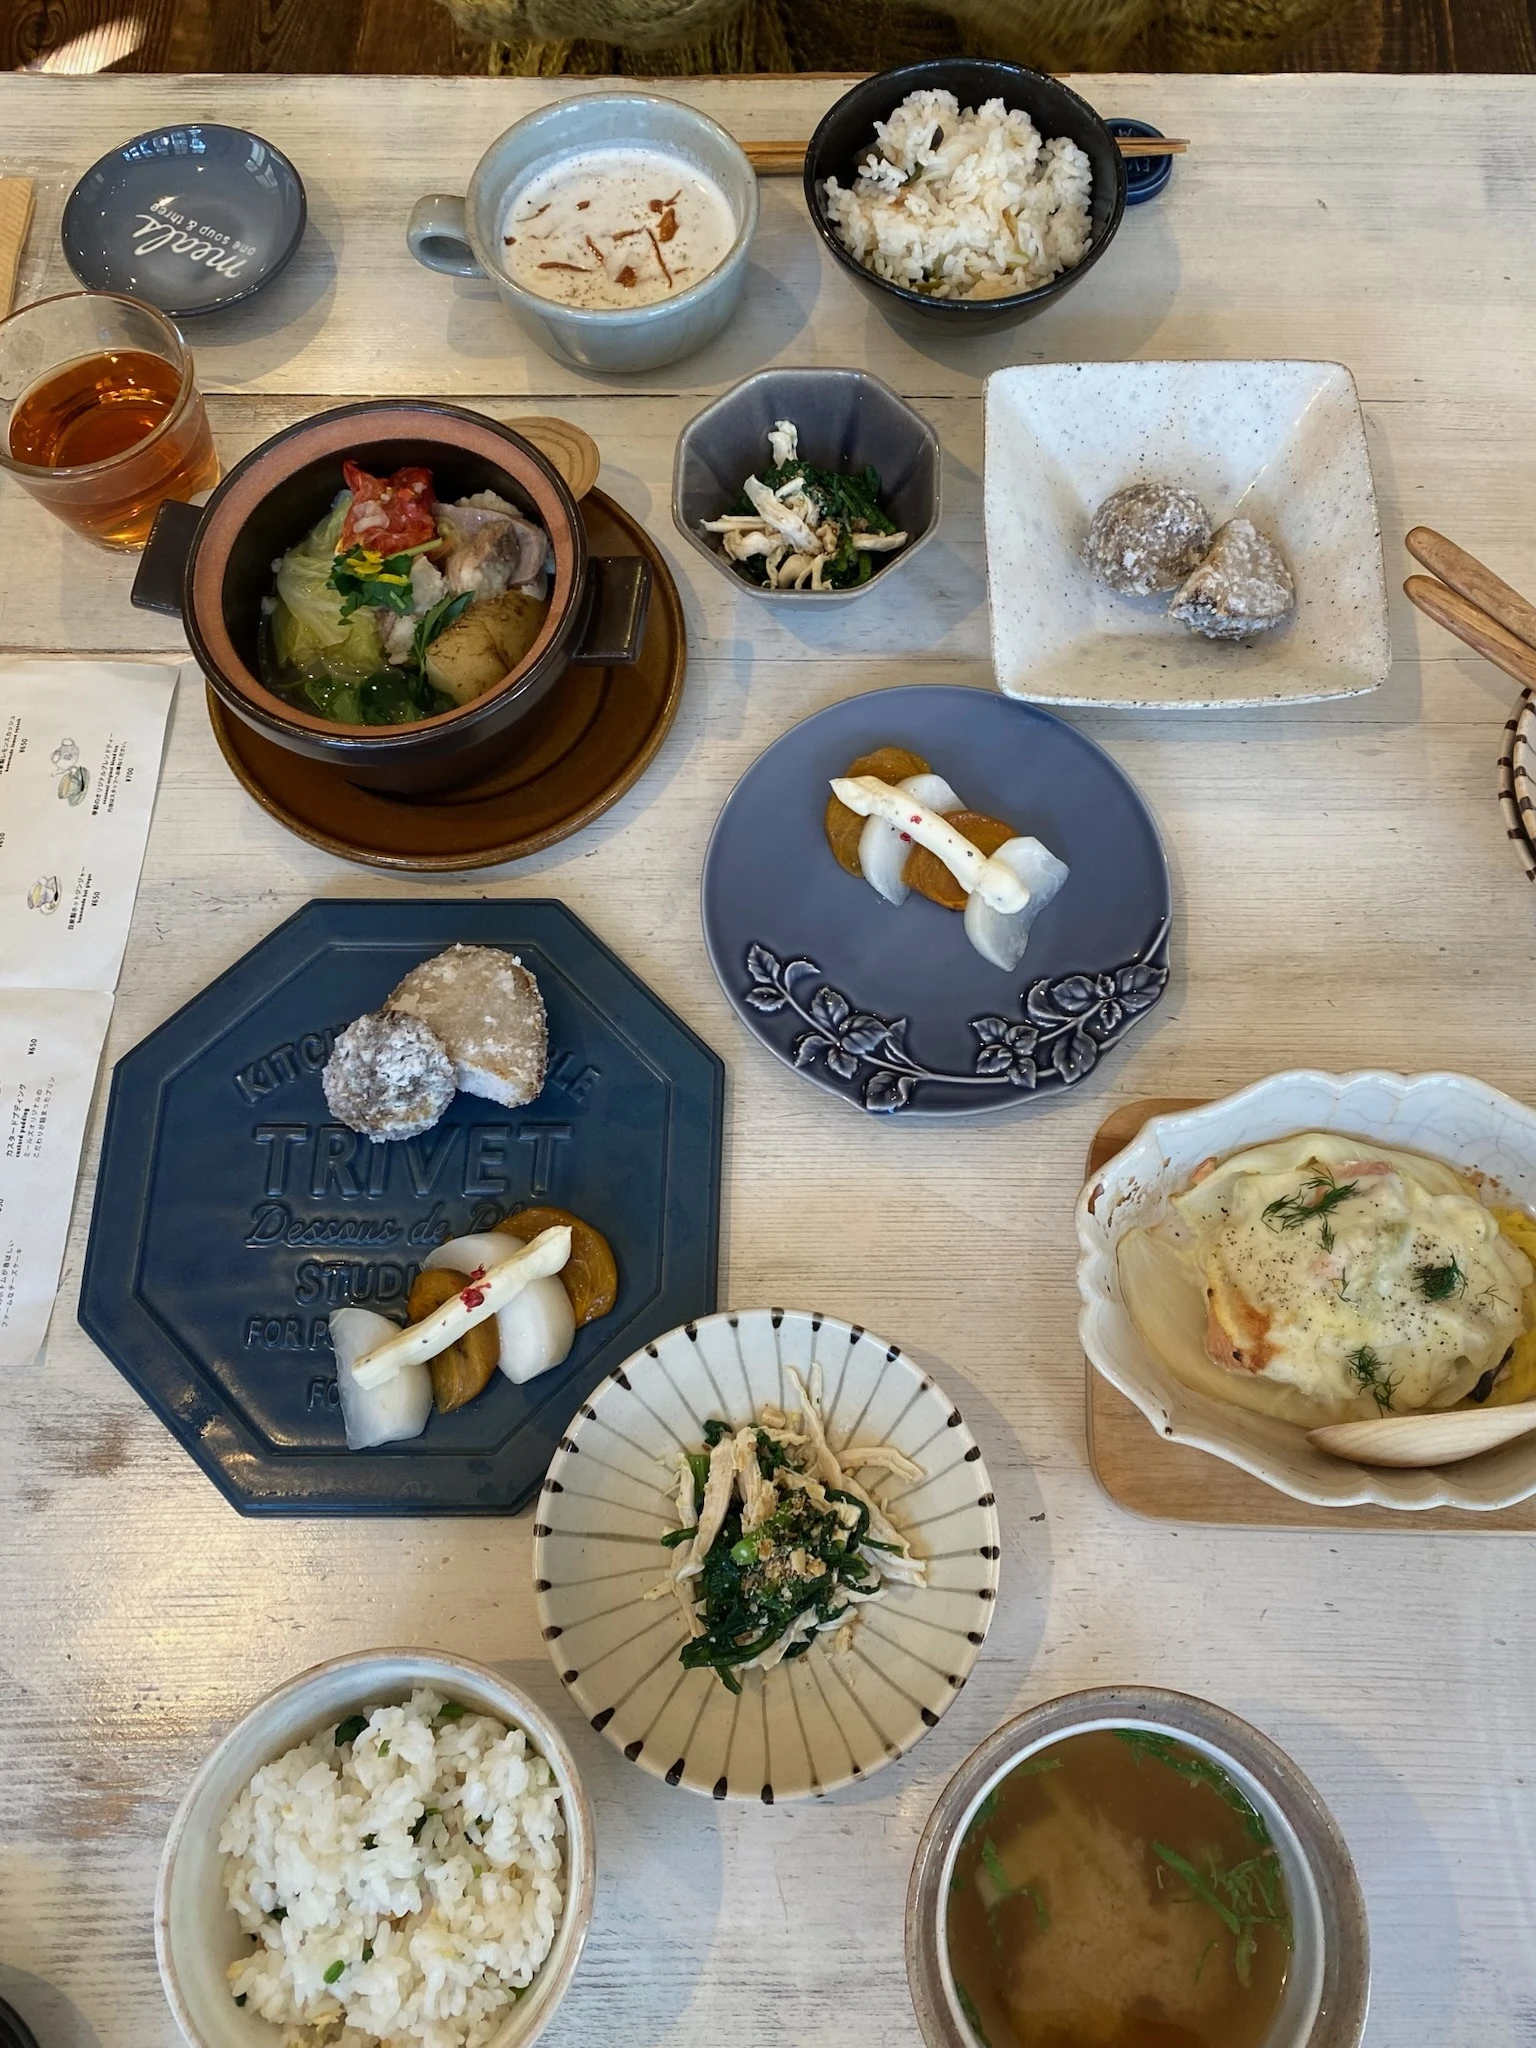 渋谷と代々木公園駅の間にあるカフェ「Meals Are Delightful」のランチ